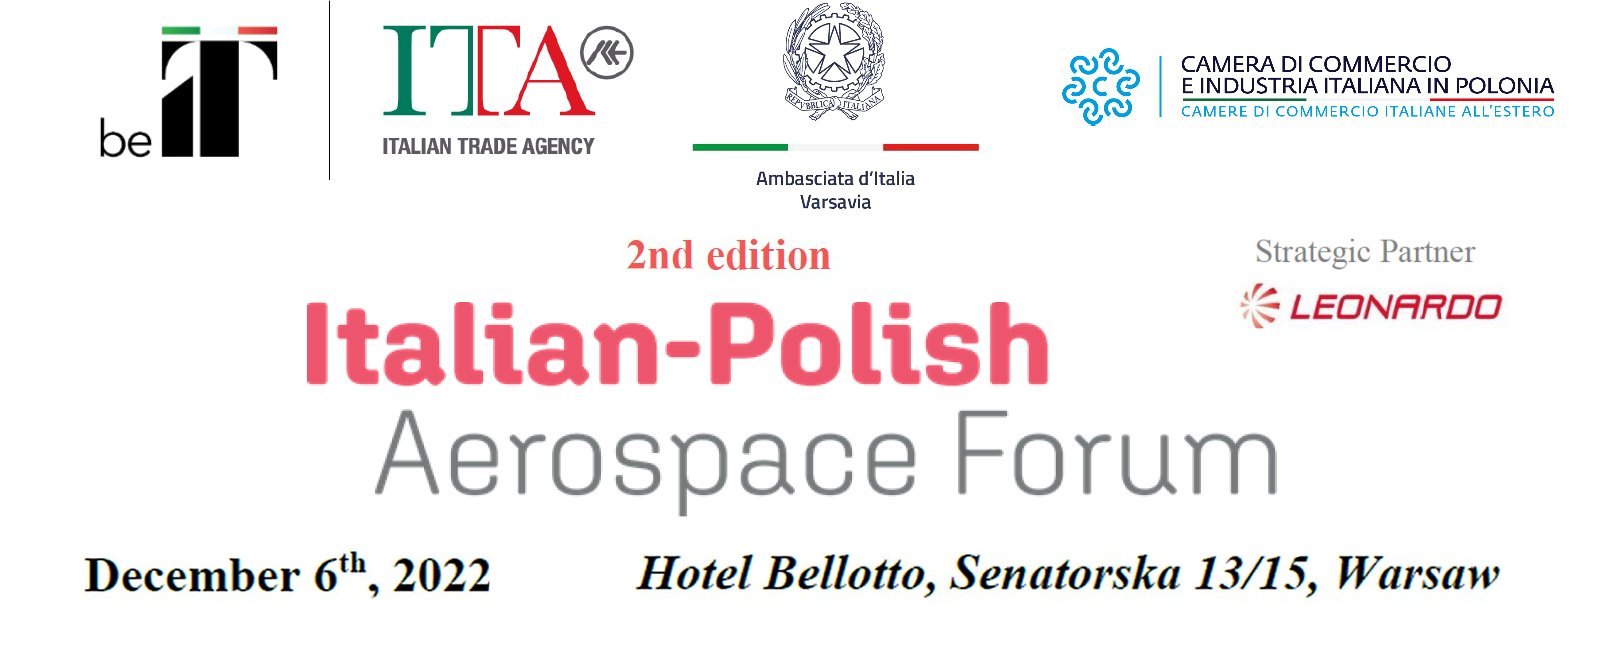 2022_AeroSpazio+Forum_IT-PL